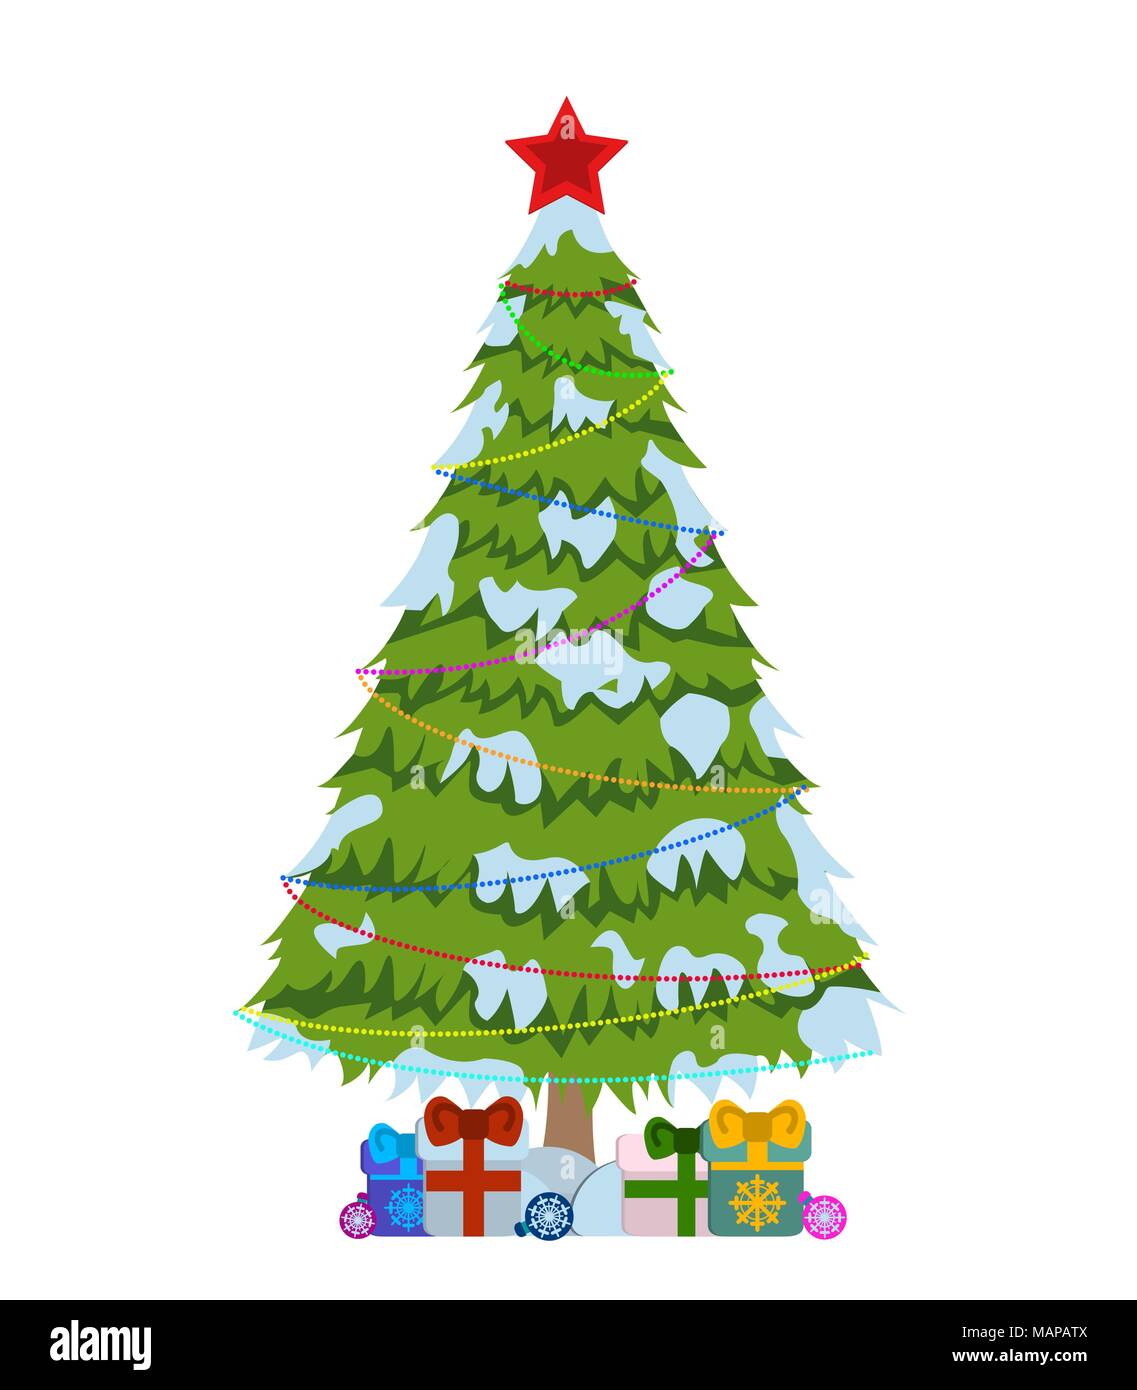 Merry Christmas tree Zeichen auf weißem Hintergrund. Pine Tree mit bunten Lichtern Logo. Vector Illustration. Stock Vektor